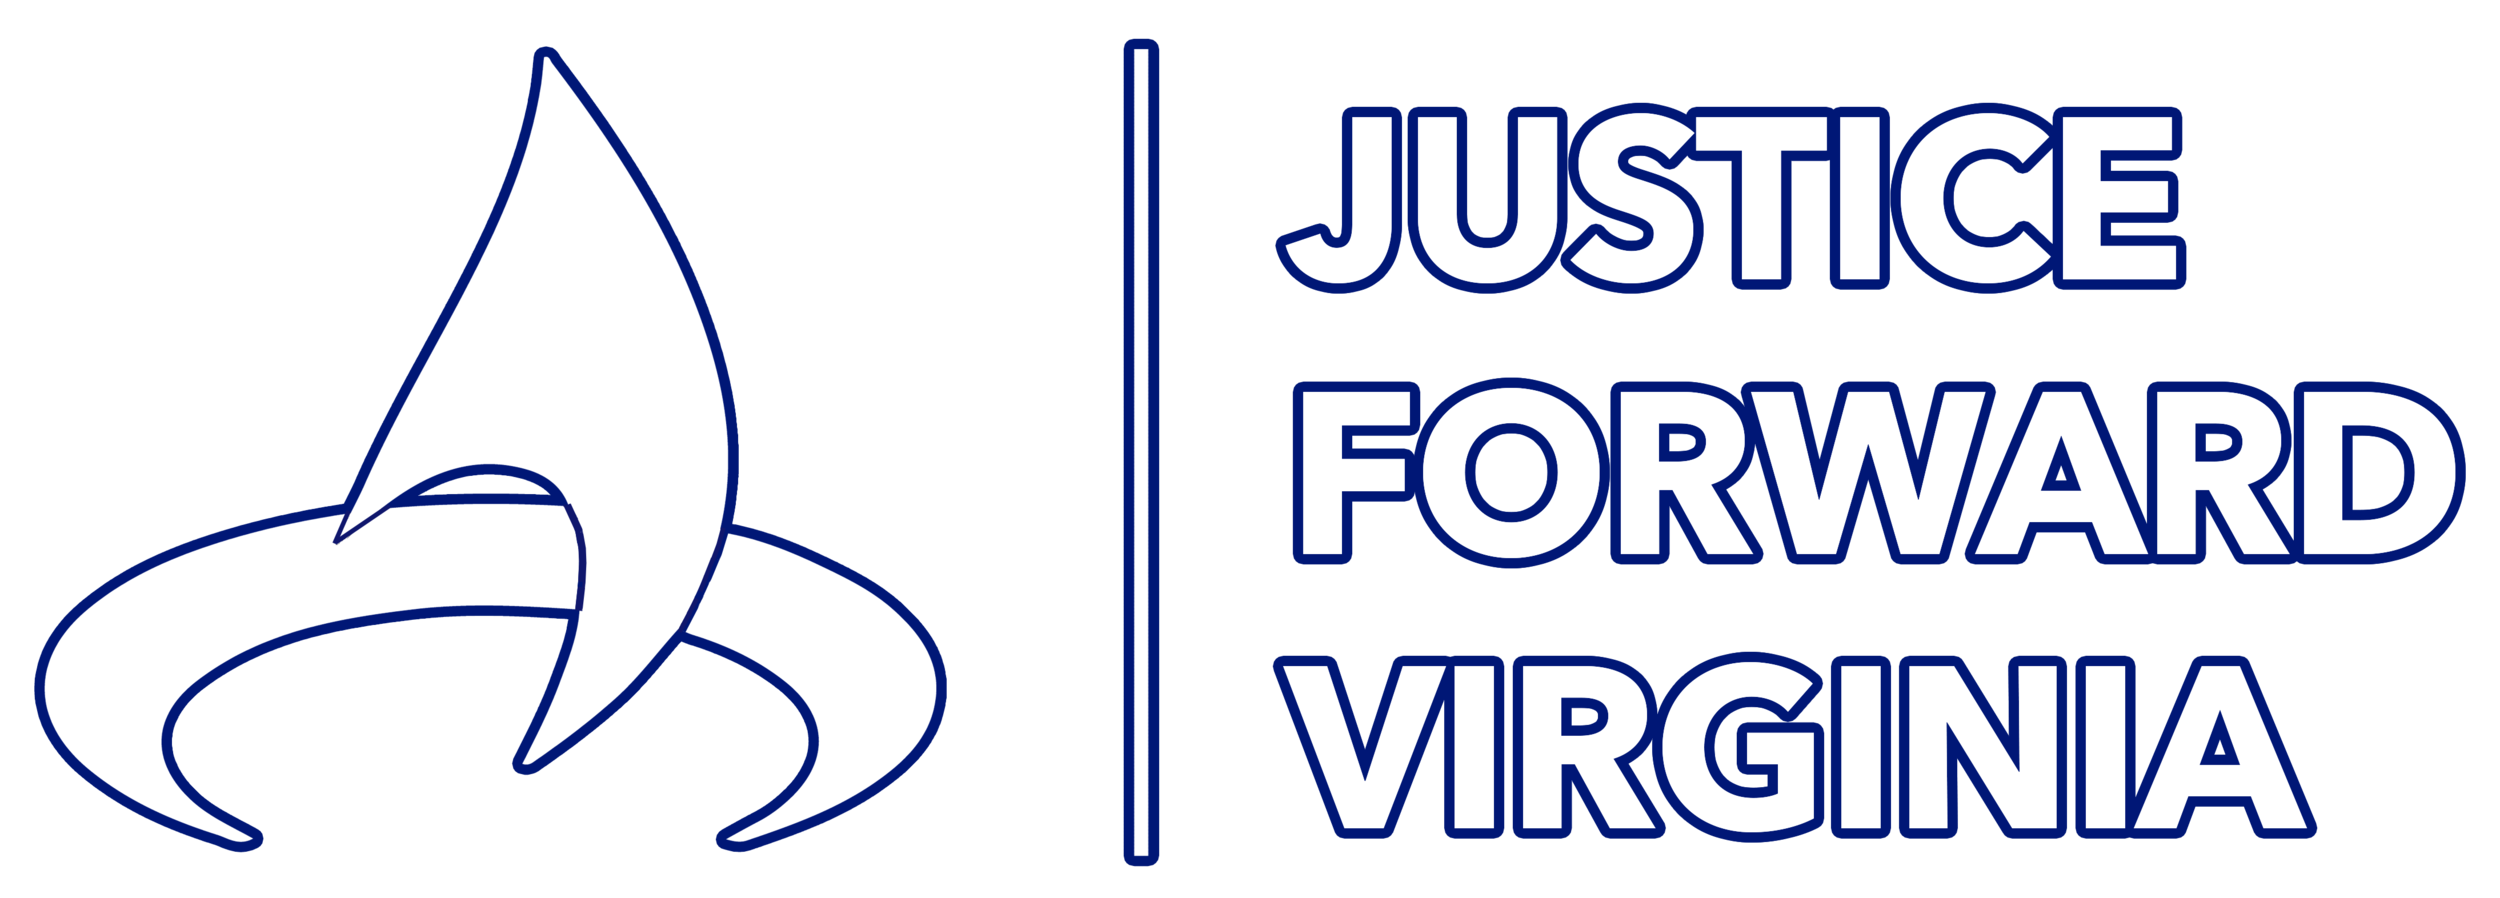 Justice Forward Virginia